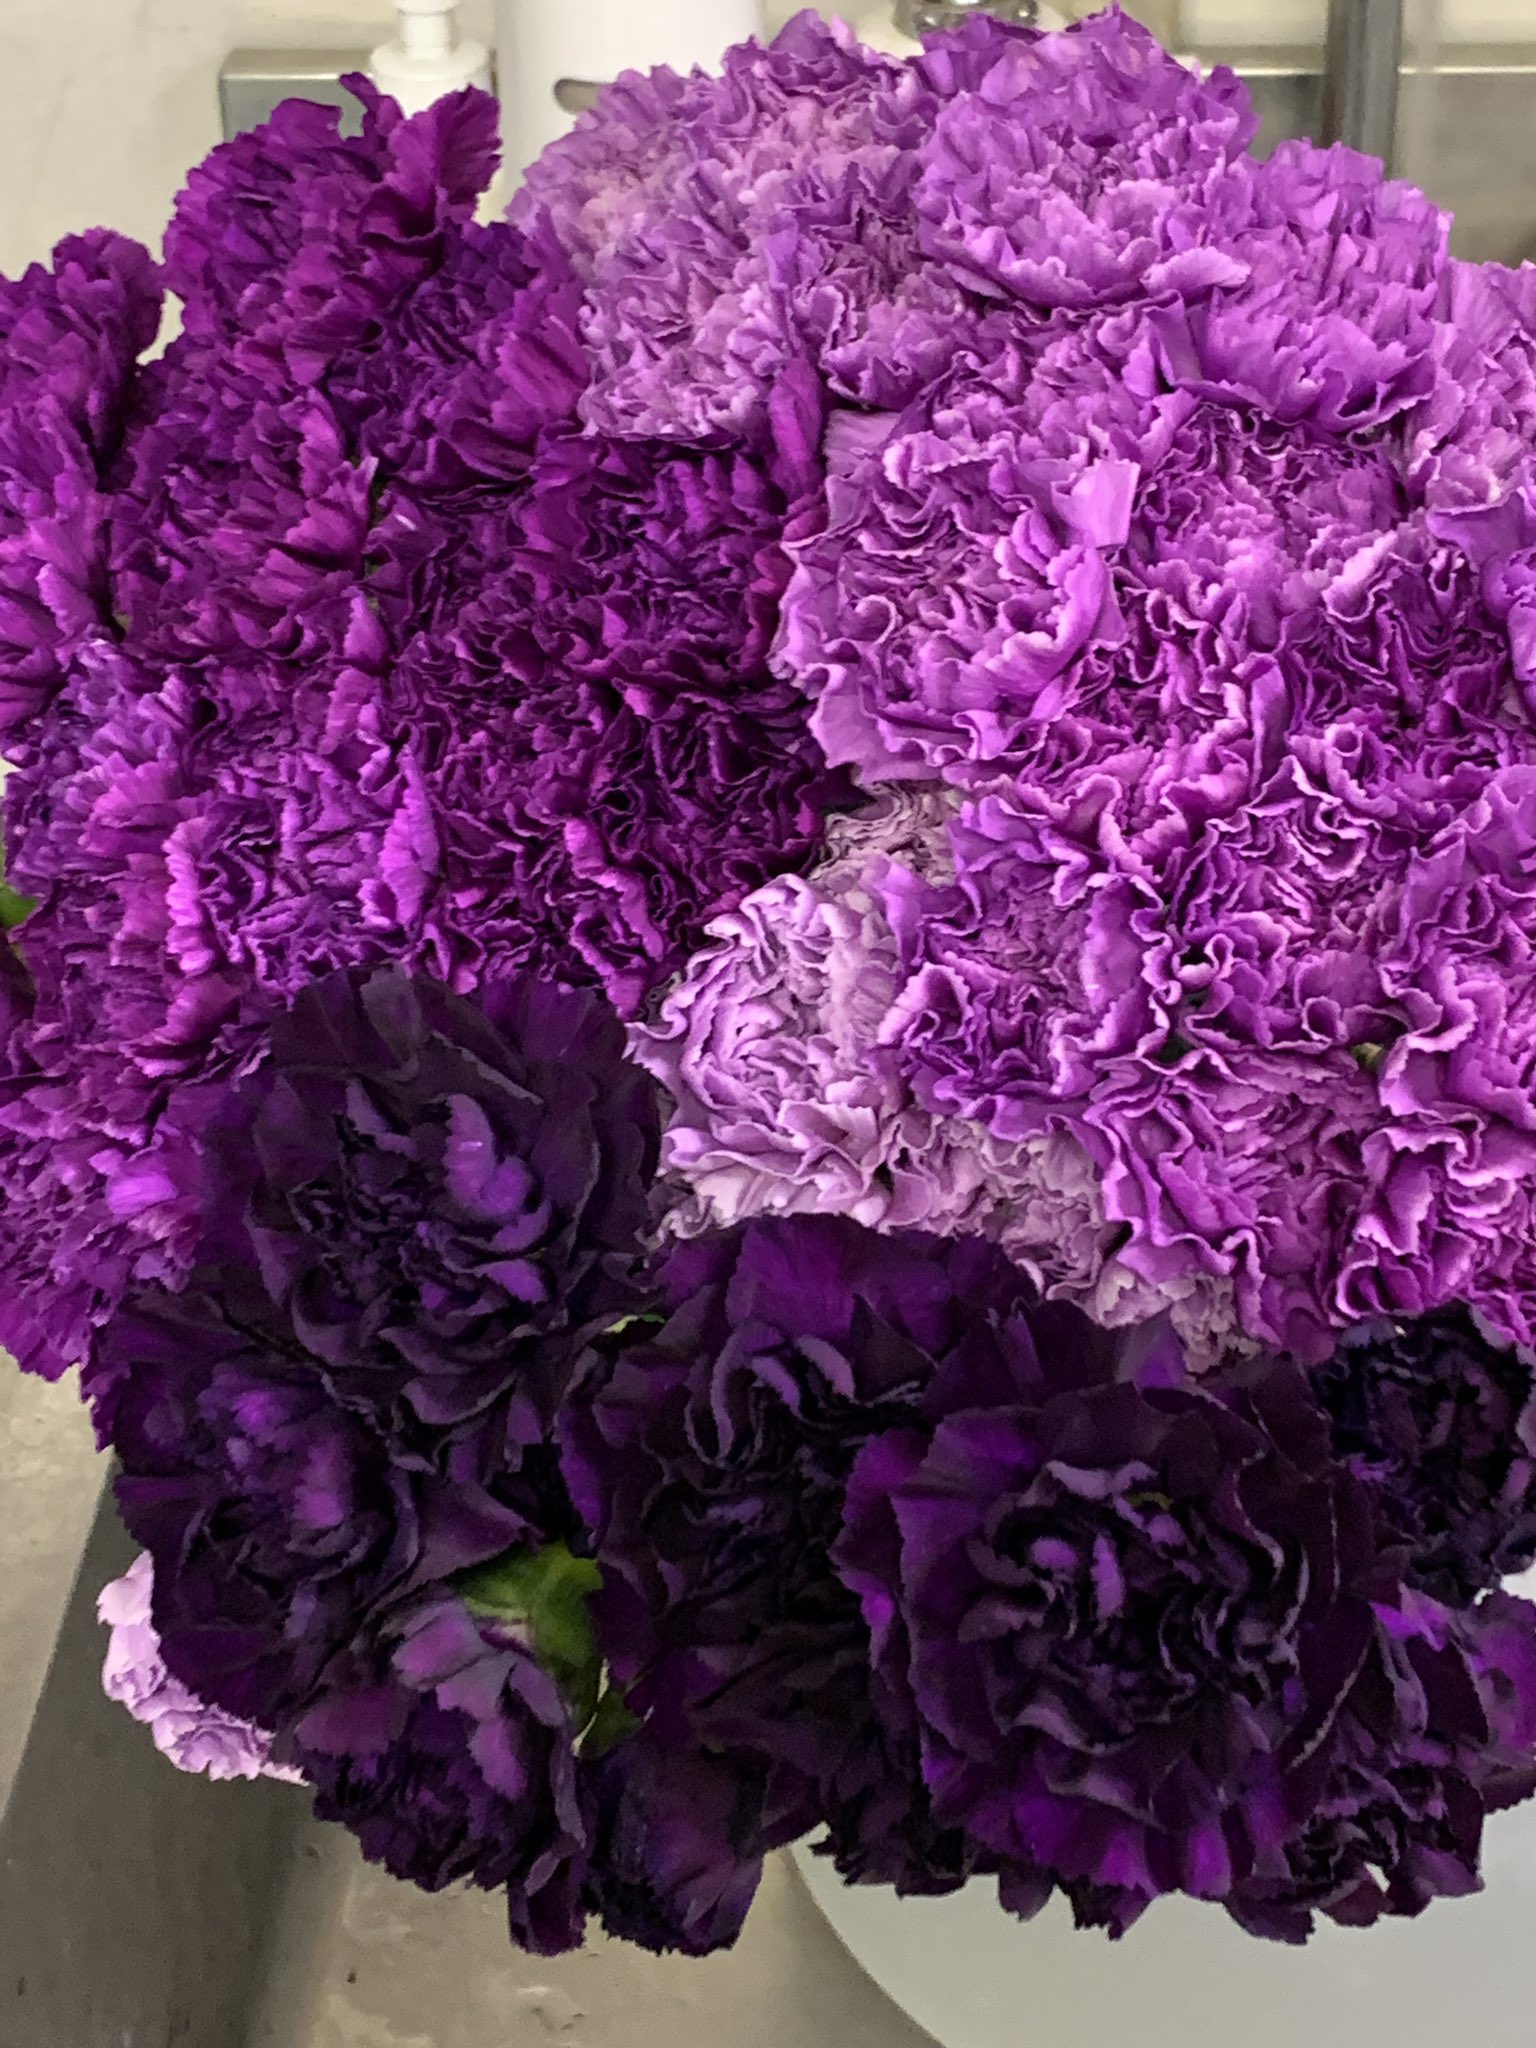 有村慎一 Shin Ichi Arimura Gmo Blue Purple Carnations Presented From My Respecting Dr Tanaka Who Lead Establishing The Blue Roses For Thanks Of My Talk At His Laboratory Although It Was On Zoom